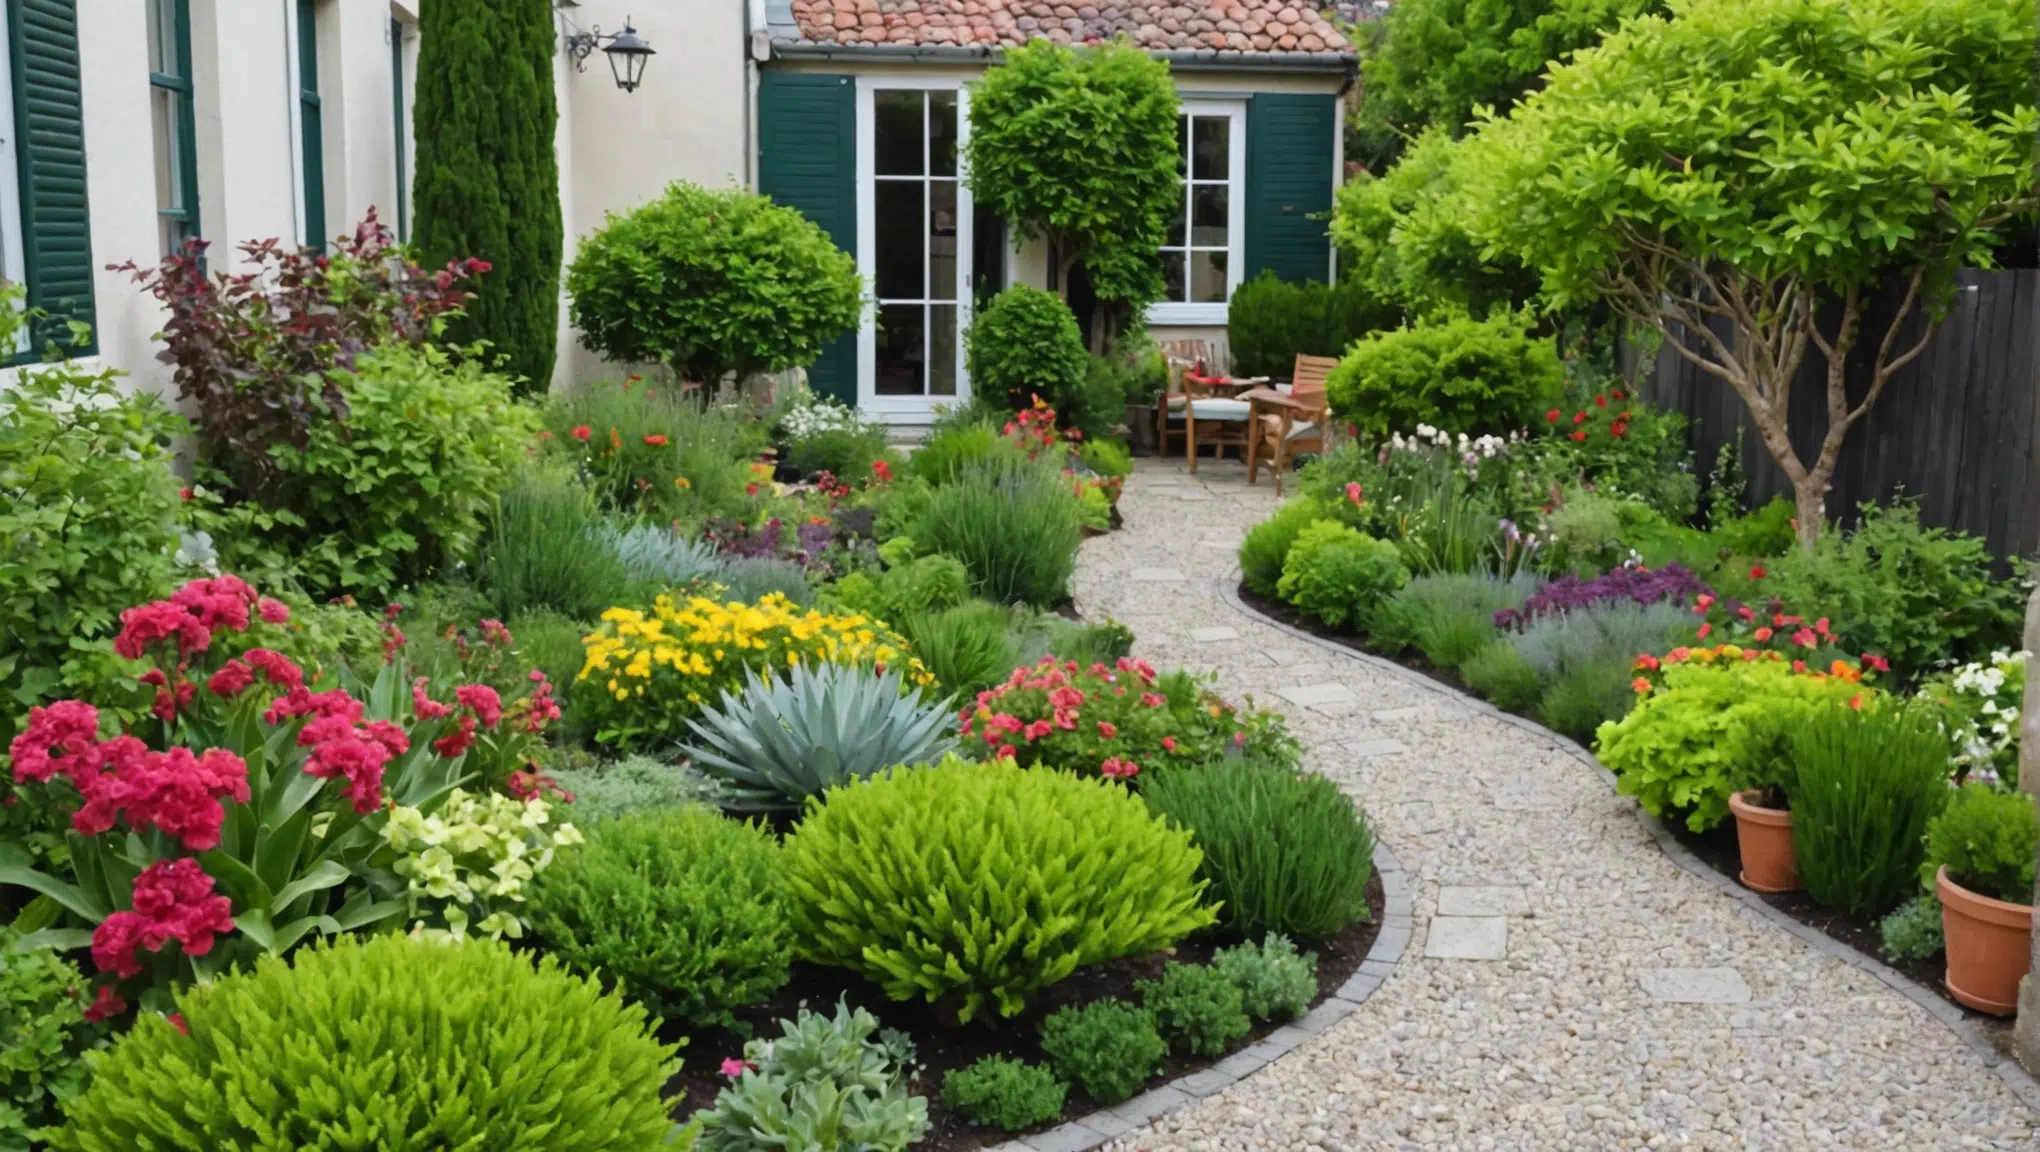 découvrez les 5 techniques de jardinage pour des plantes luxuriantes et épanouies et devenez un expert en jardinage !